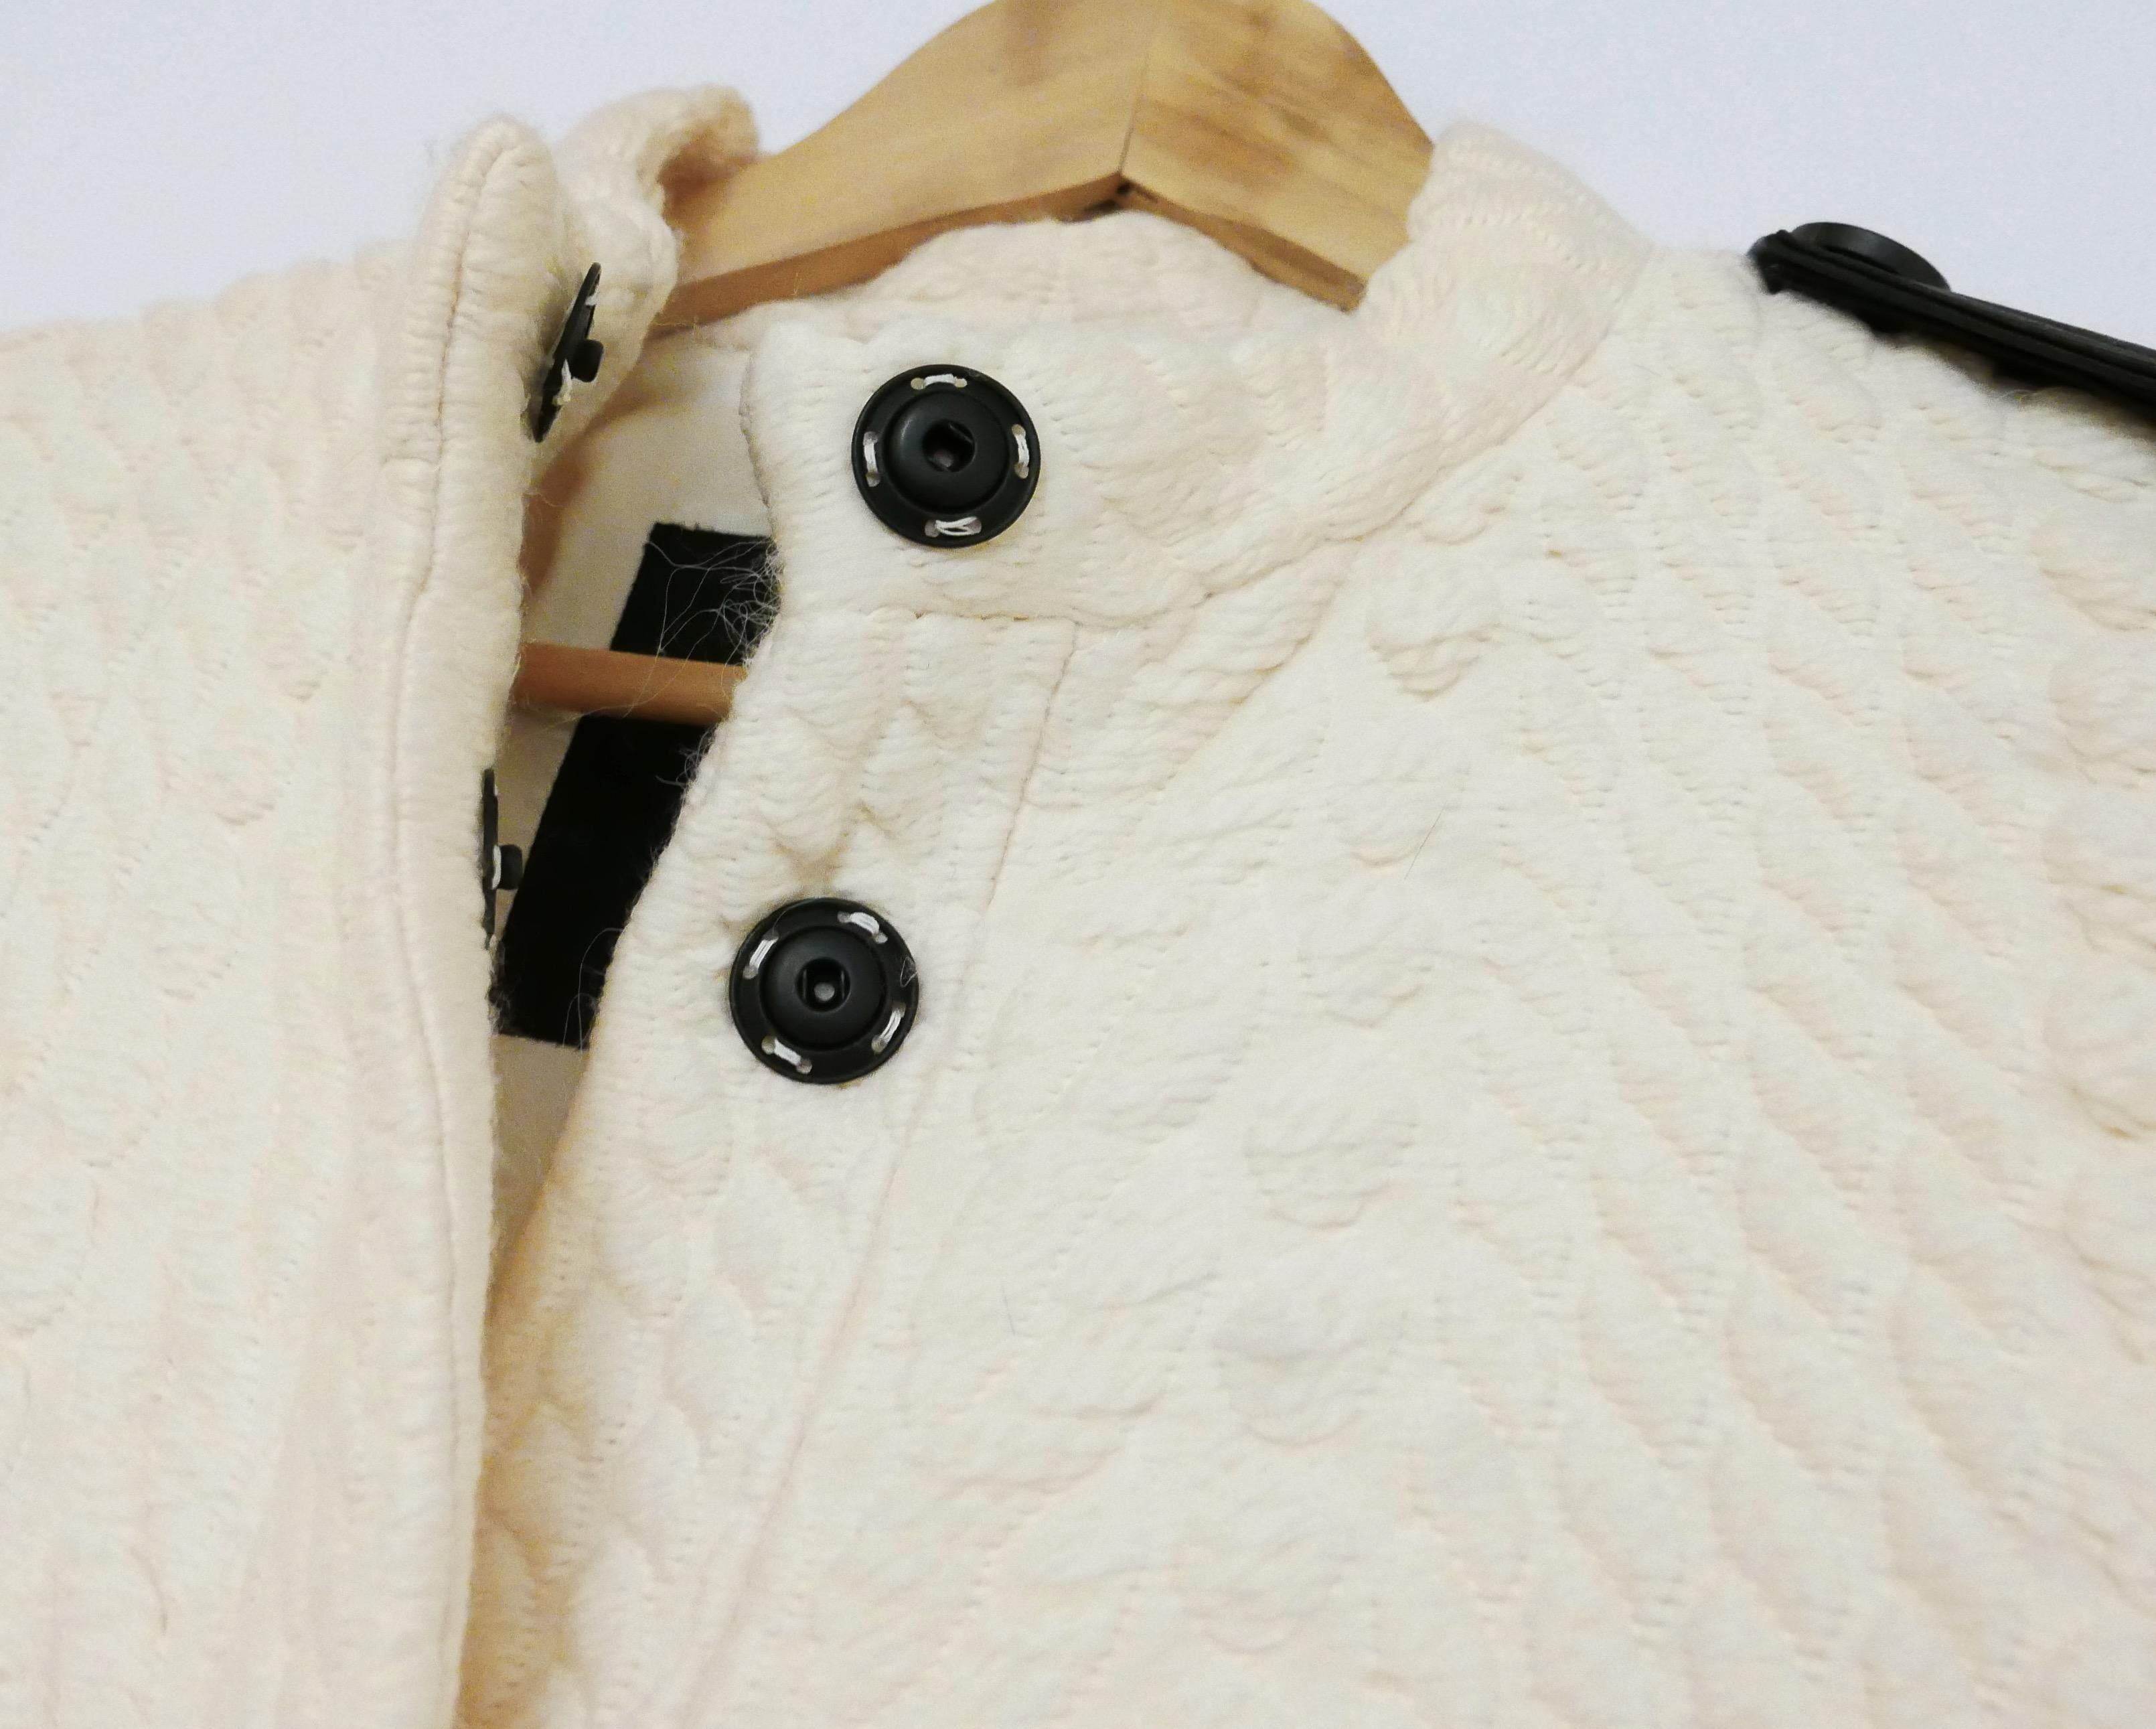 Superbe manteau Burberry AW11 - il figure également dans la campagne publicitaire. 

Acheté pour £2200 et neuf avec l'étiquette Net-A-Porter attachée. 

Fabriqué en laine crème épaisse avec un magnifique motif texturé et détaillé en tricot câblé sur